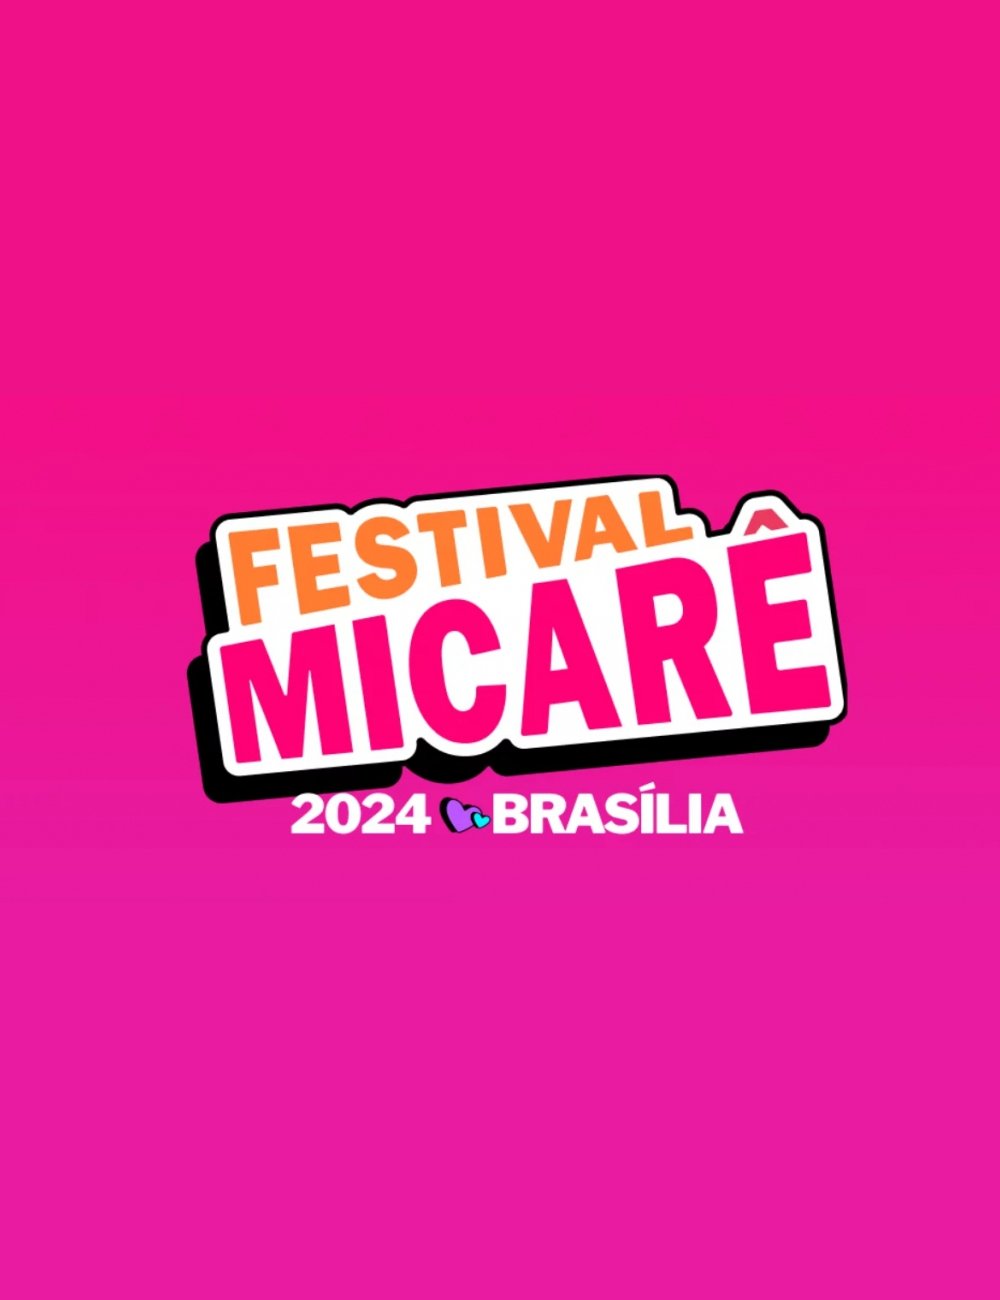 Festival Micarê - festival - festivais 2024 - música - show - https://stealthelook.com.br